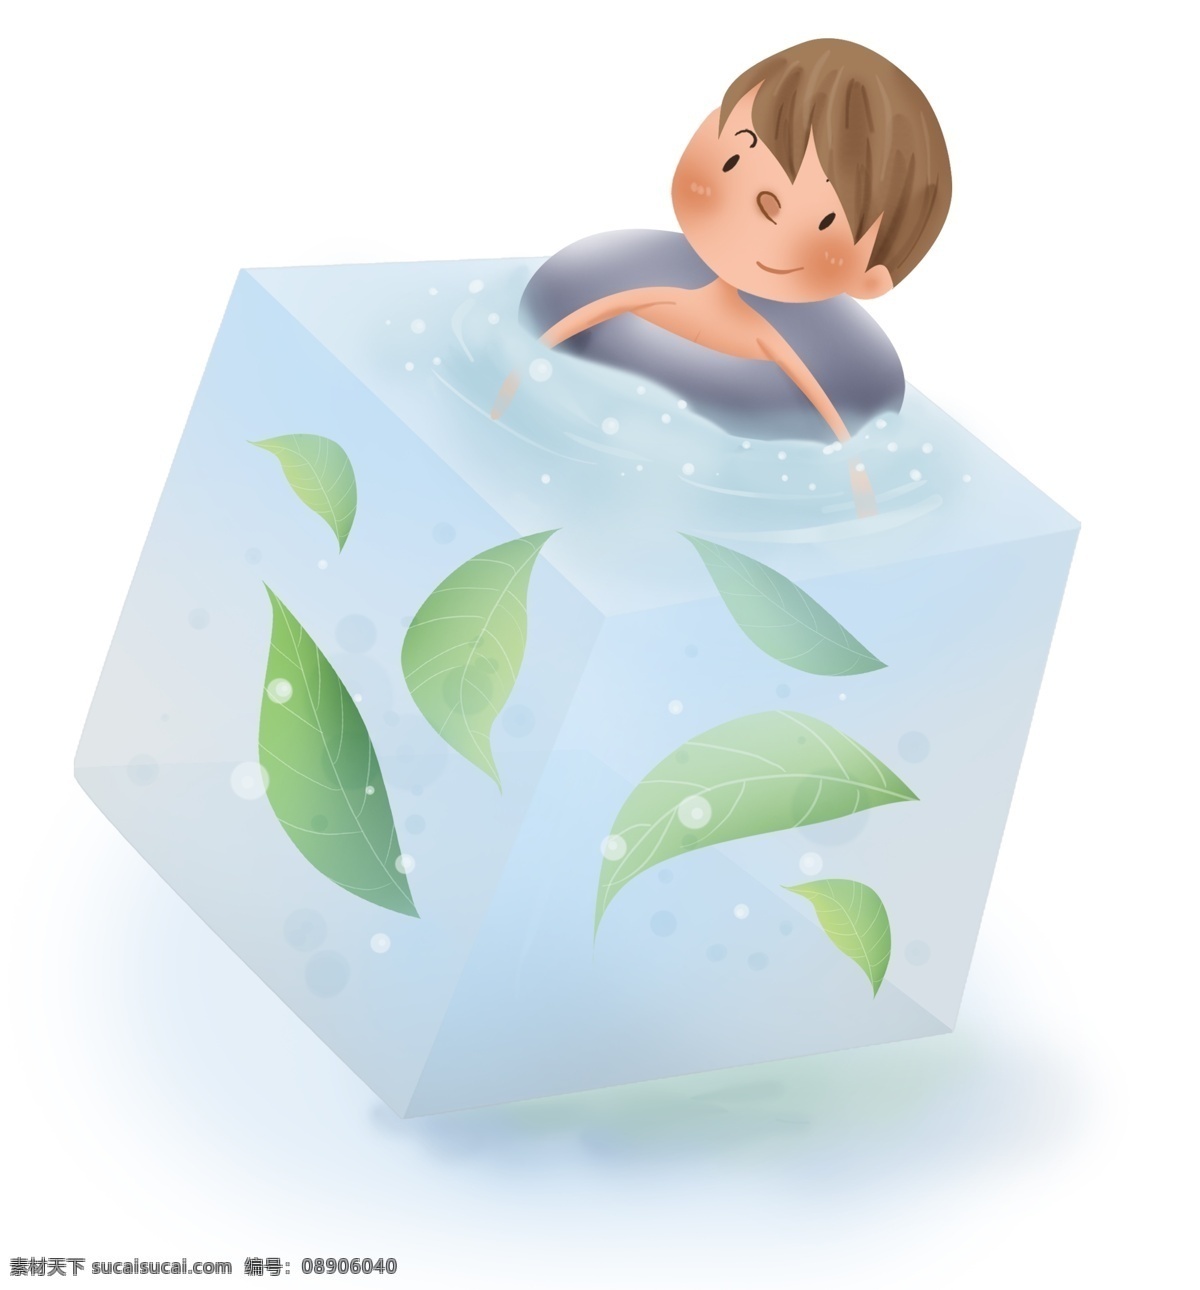 夏季 游泳 男孩 冰 水 水下 叶子 游泳圈 小暑 入夏 大暑 儿童 冰块 解暑 清凉 凉爽